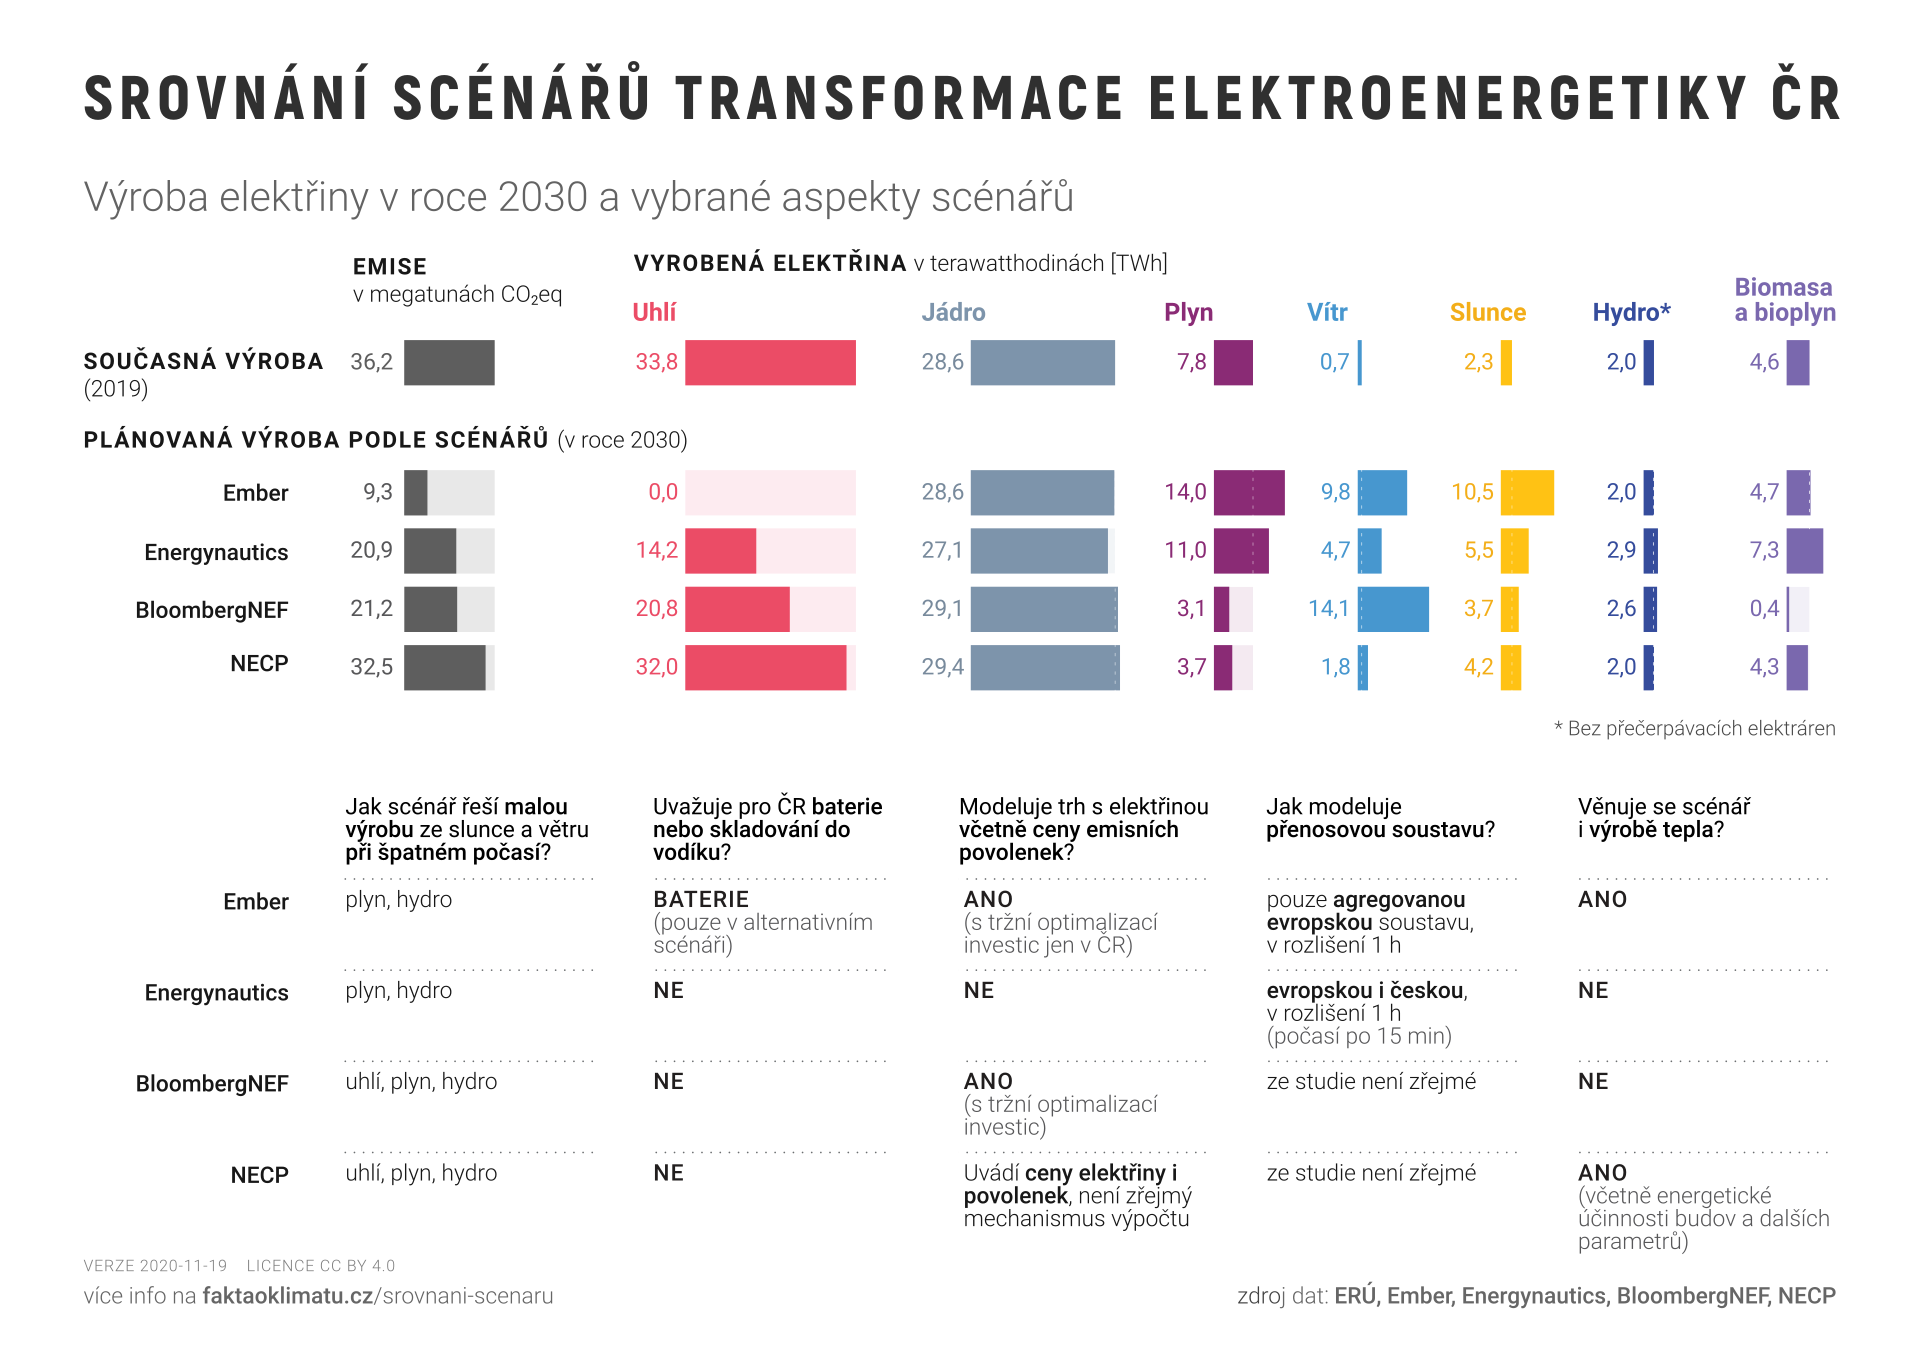 Graf č. 5 – porovnání scénářů transformace české energetiky. Převzato z webu projektu Fakta o klimatu, kde lze nalézt také zdrojová data a poznámky k použité metodice.